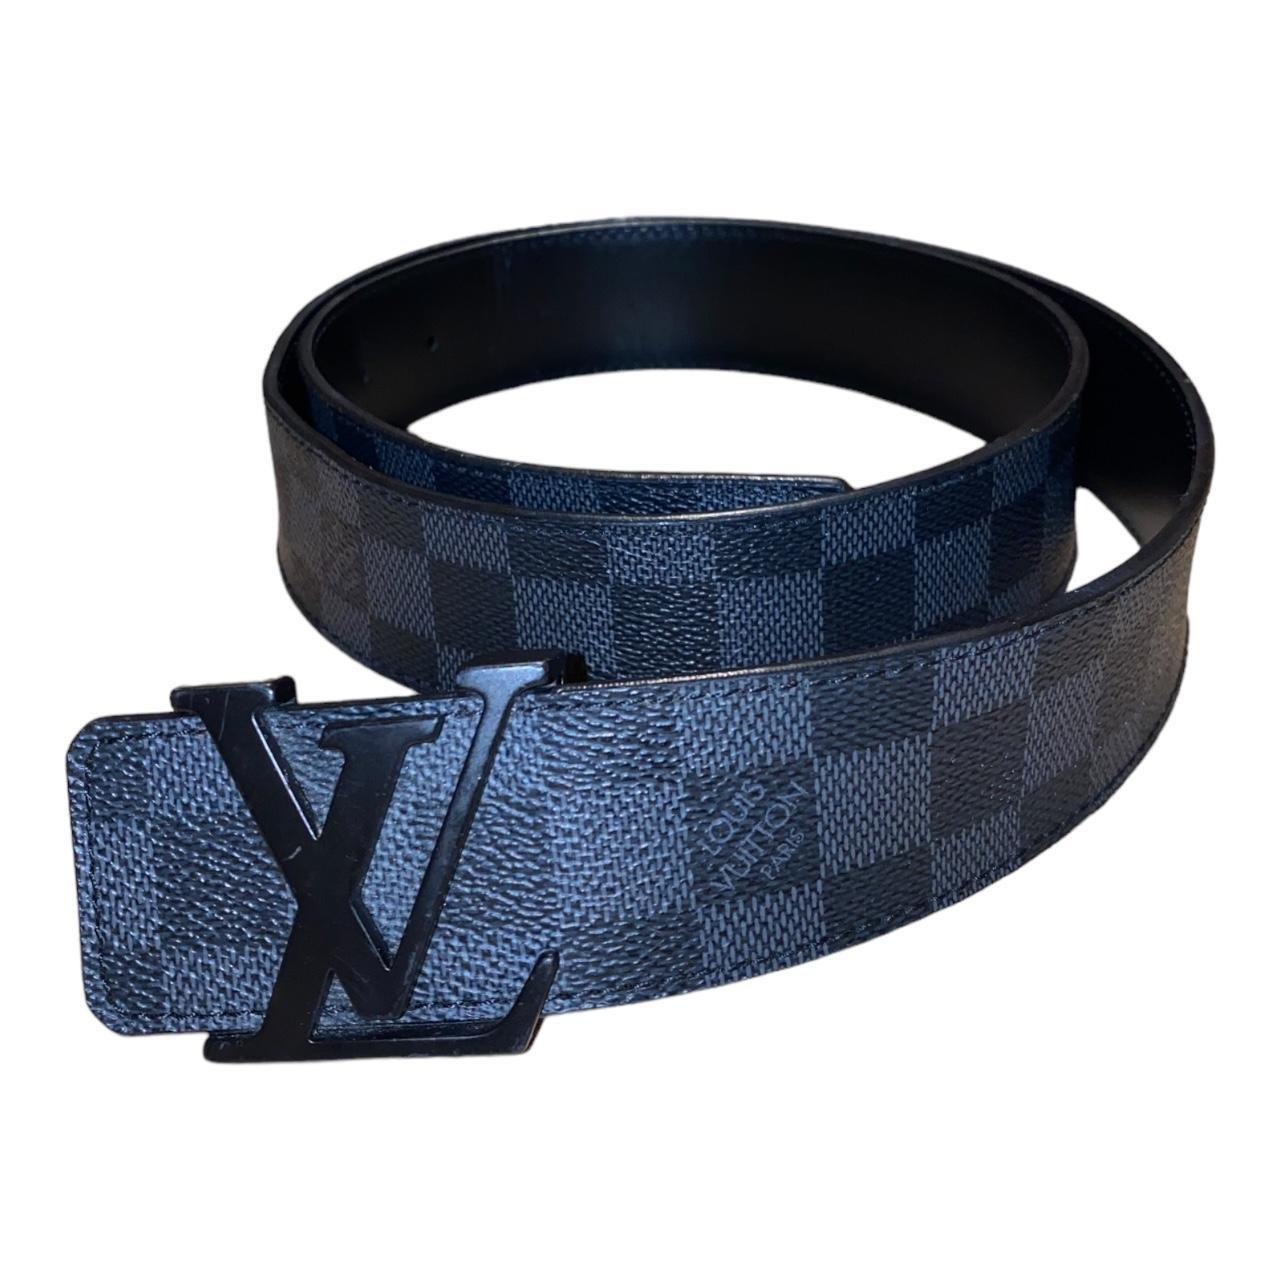 Authentic Louis Vuitton Men's Black Leather Belt - Depop